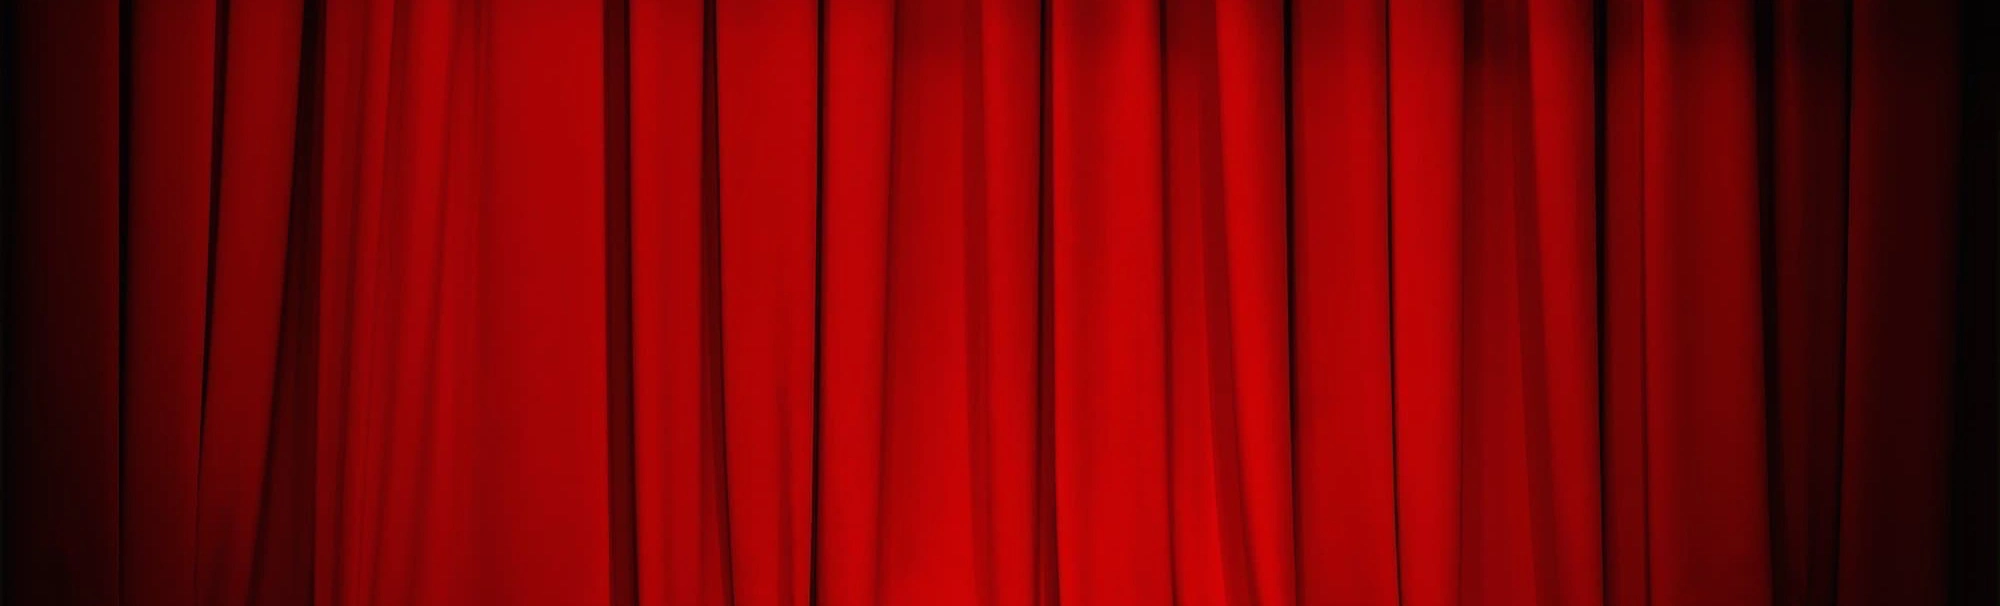 Золотой ключик к волшебному миру: Спектакль "Буратино" в Театре юного зрителя имени А.А. Брянцева!